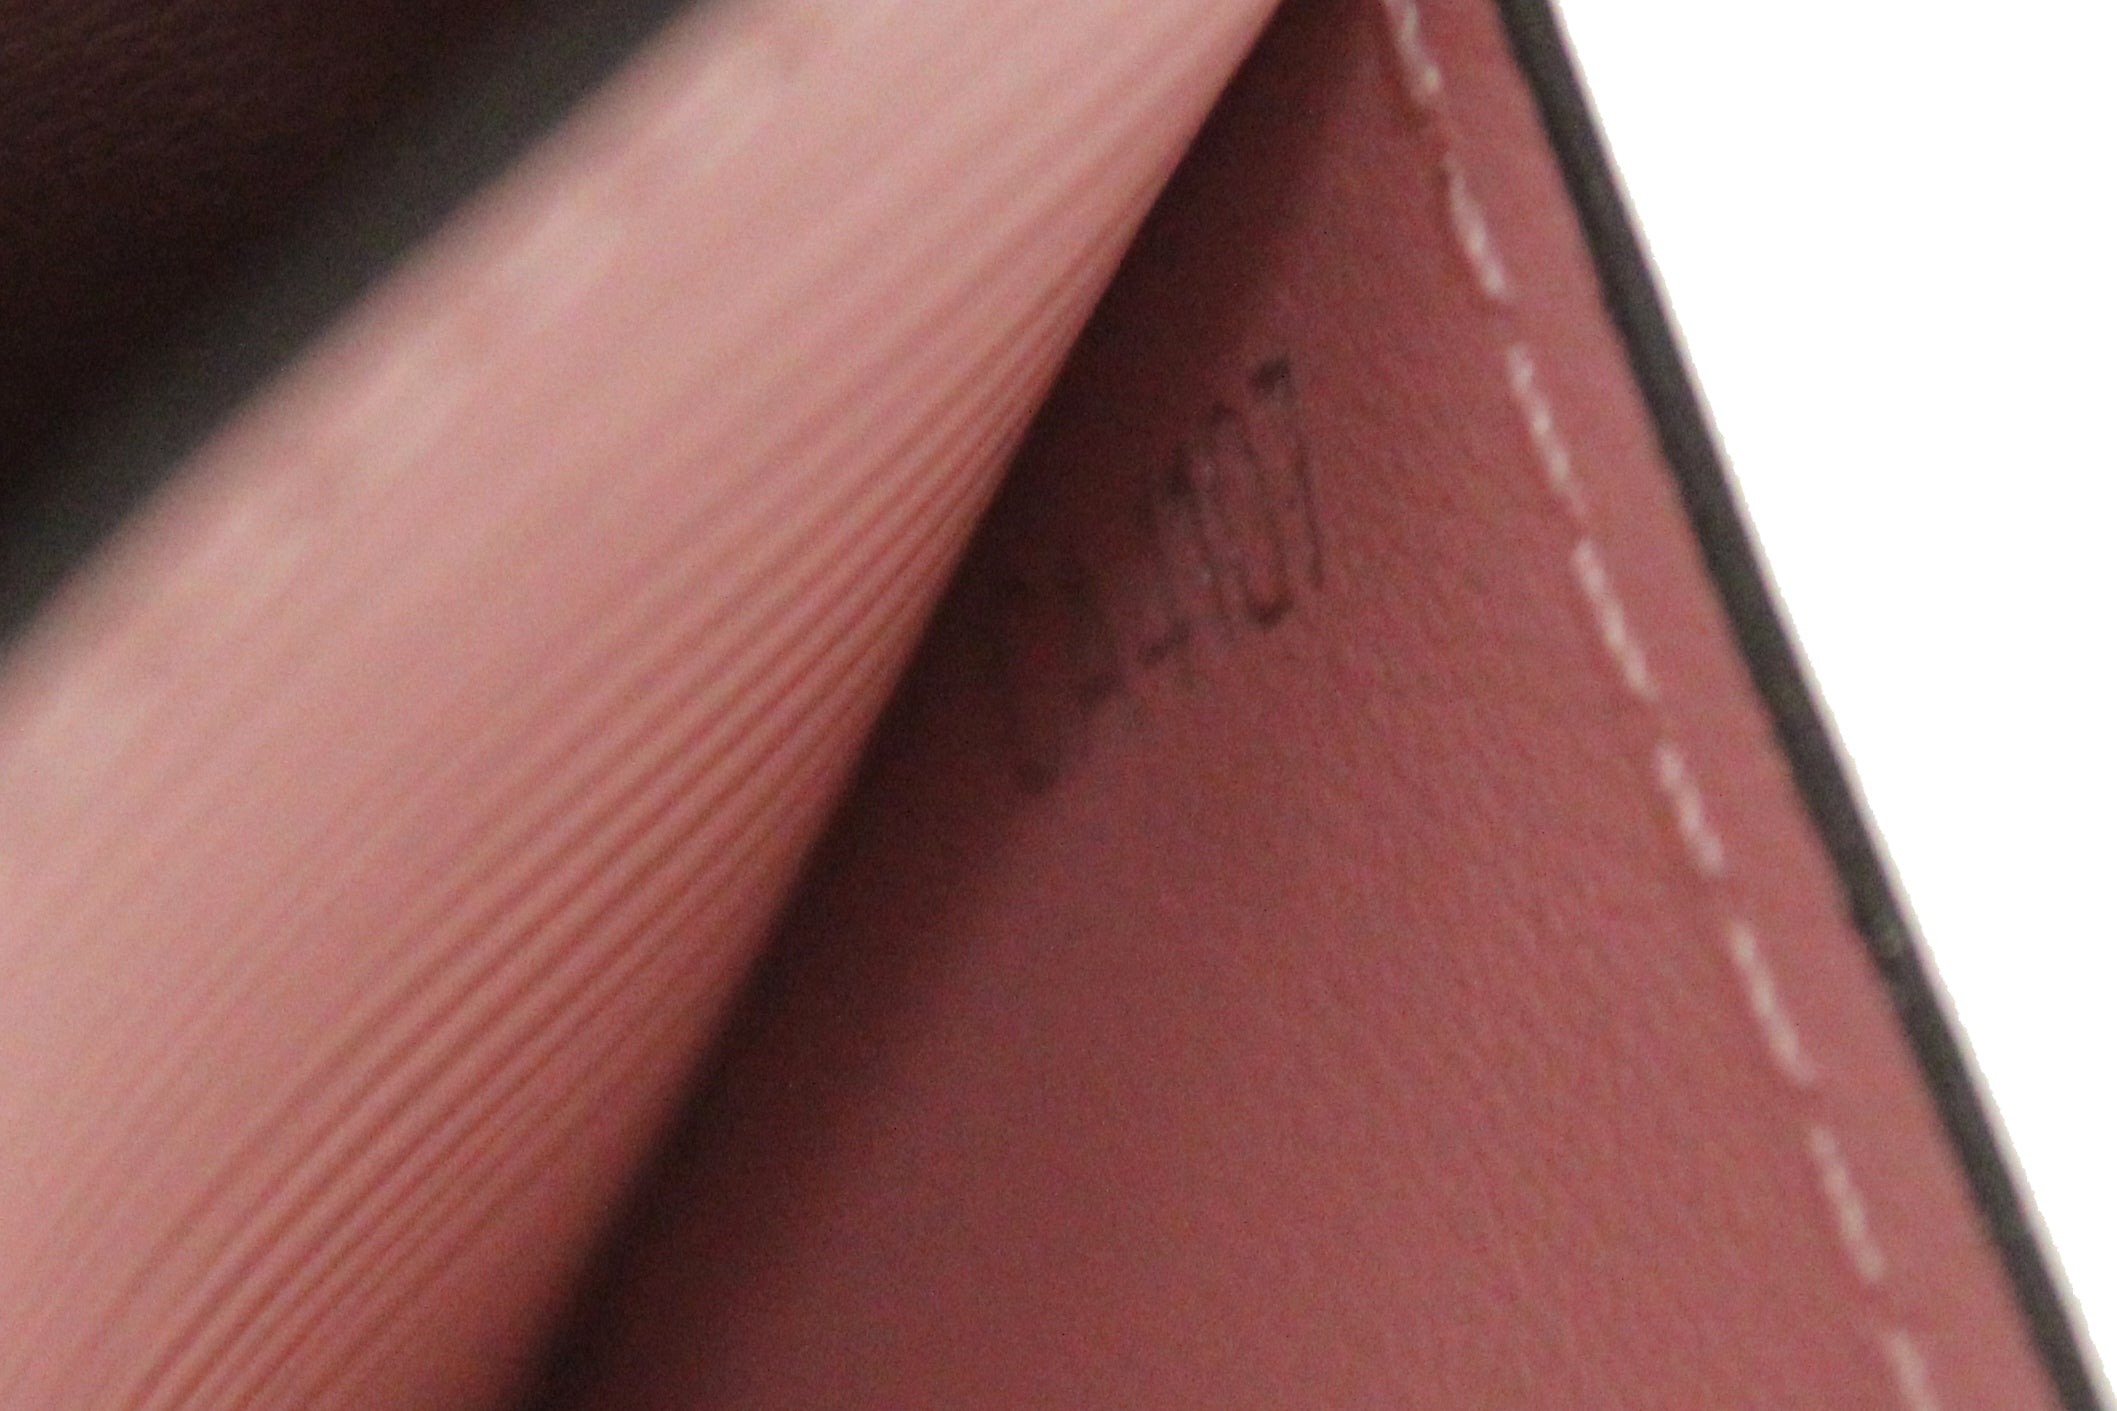 Authentic Louis Vuitton Pink Epi Leather Sarah Wallet – Paris